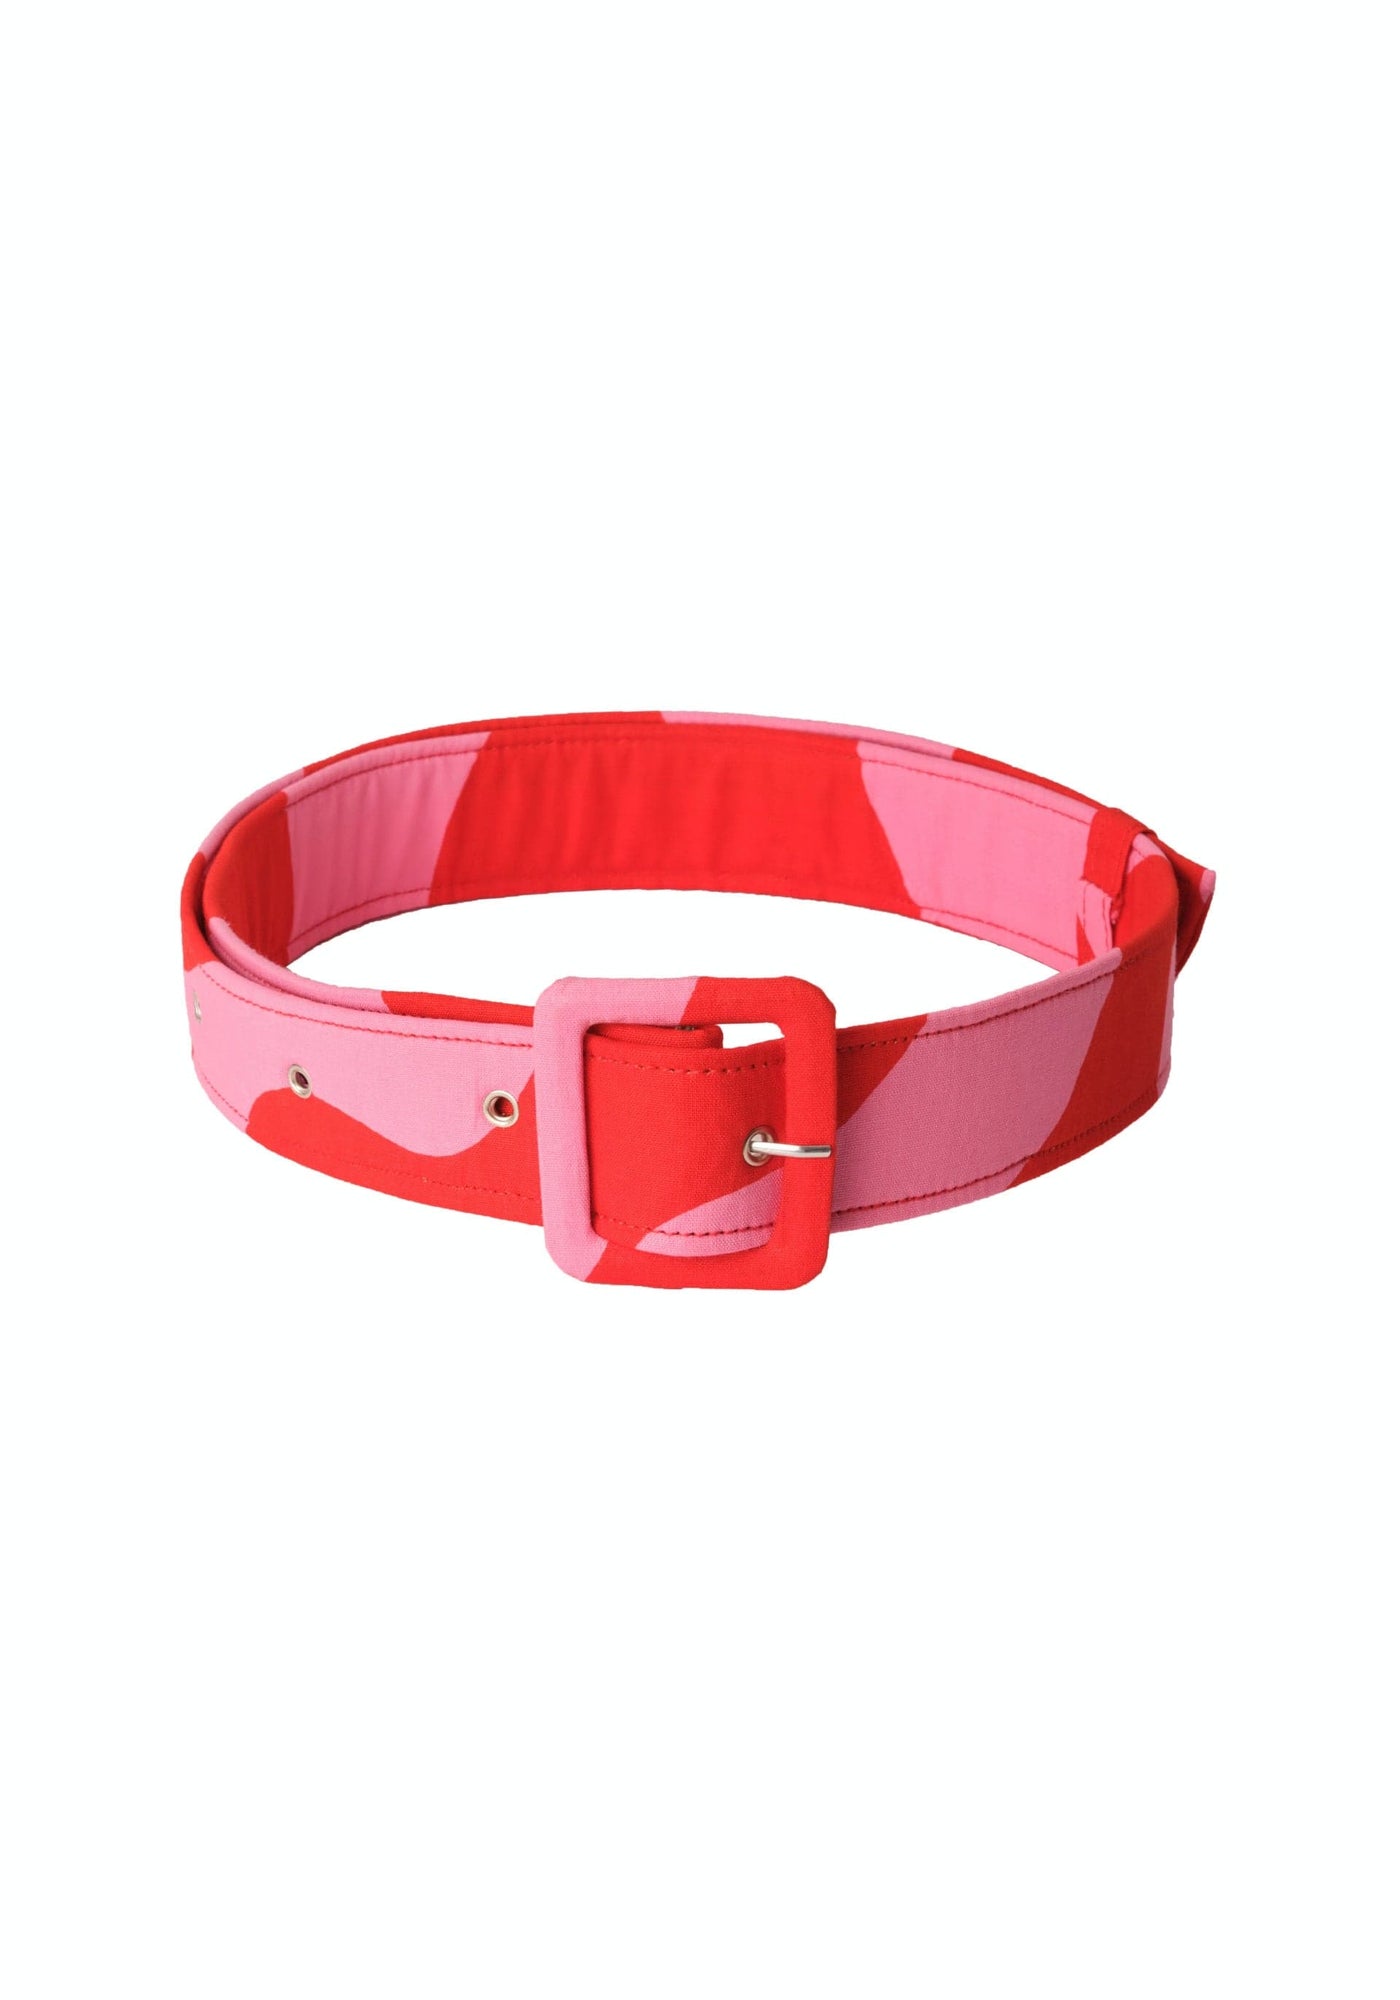 YEVU Accessories - Belts Standard Belt - Spilt Milk